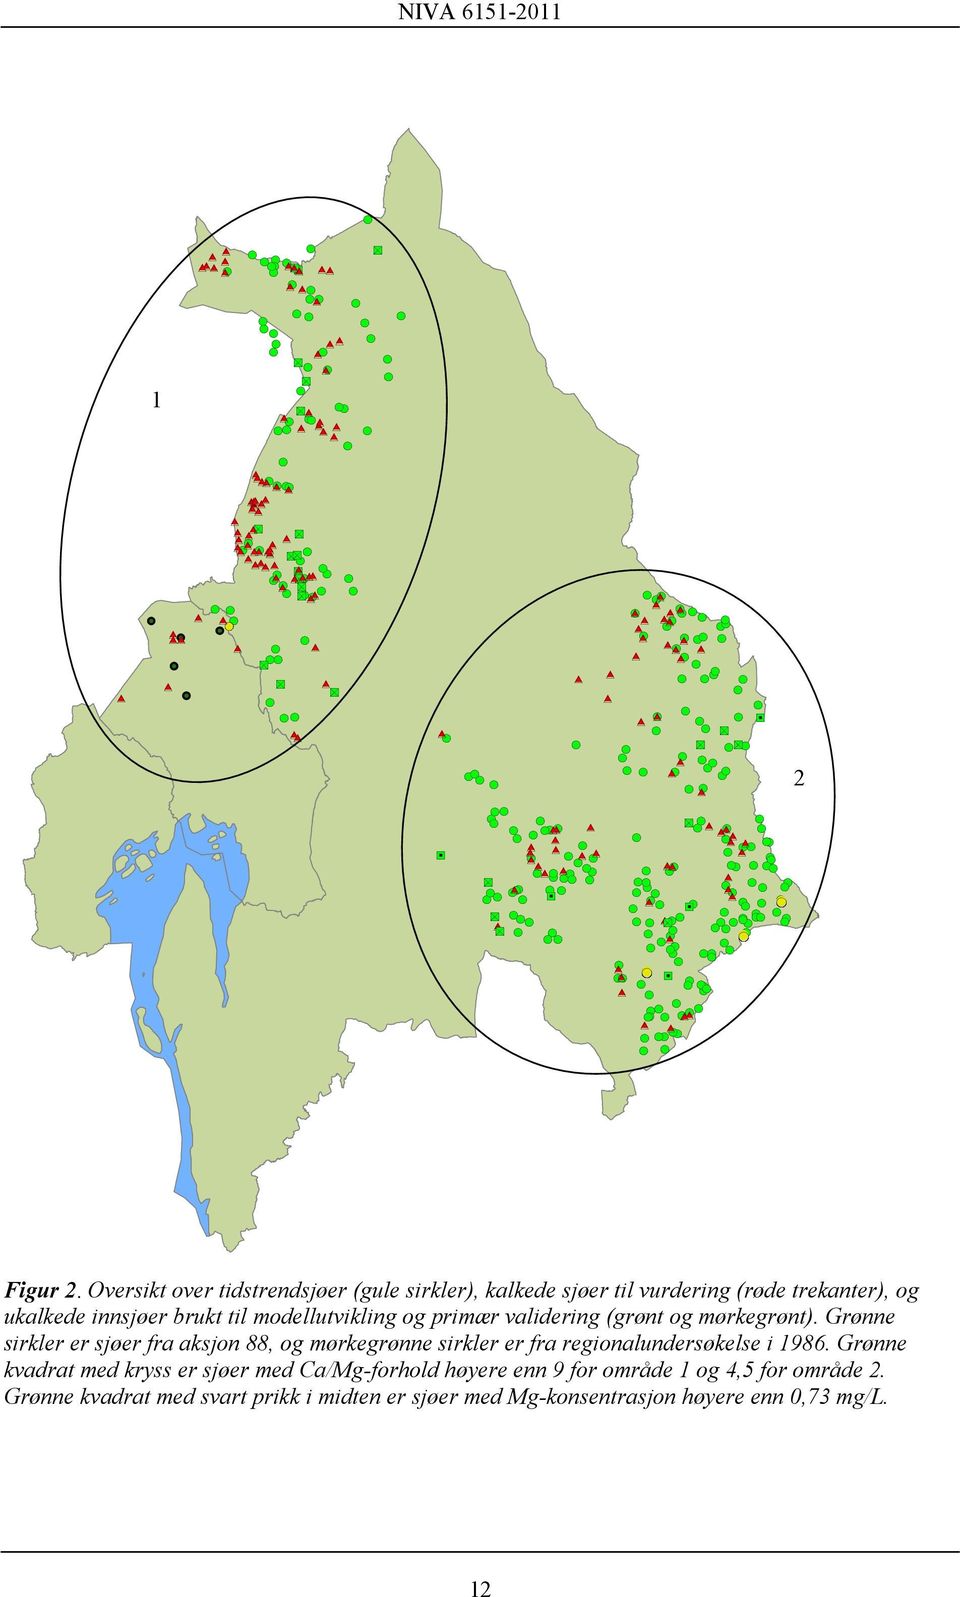 primær validering (grønt og mørkegrønt). Grønne sirkler er sjøer fra aksjon 88, og mørkegrønne sirkler er fra regionalundersøkelse i 1986.